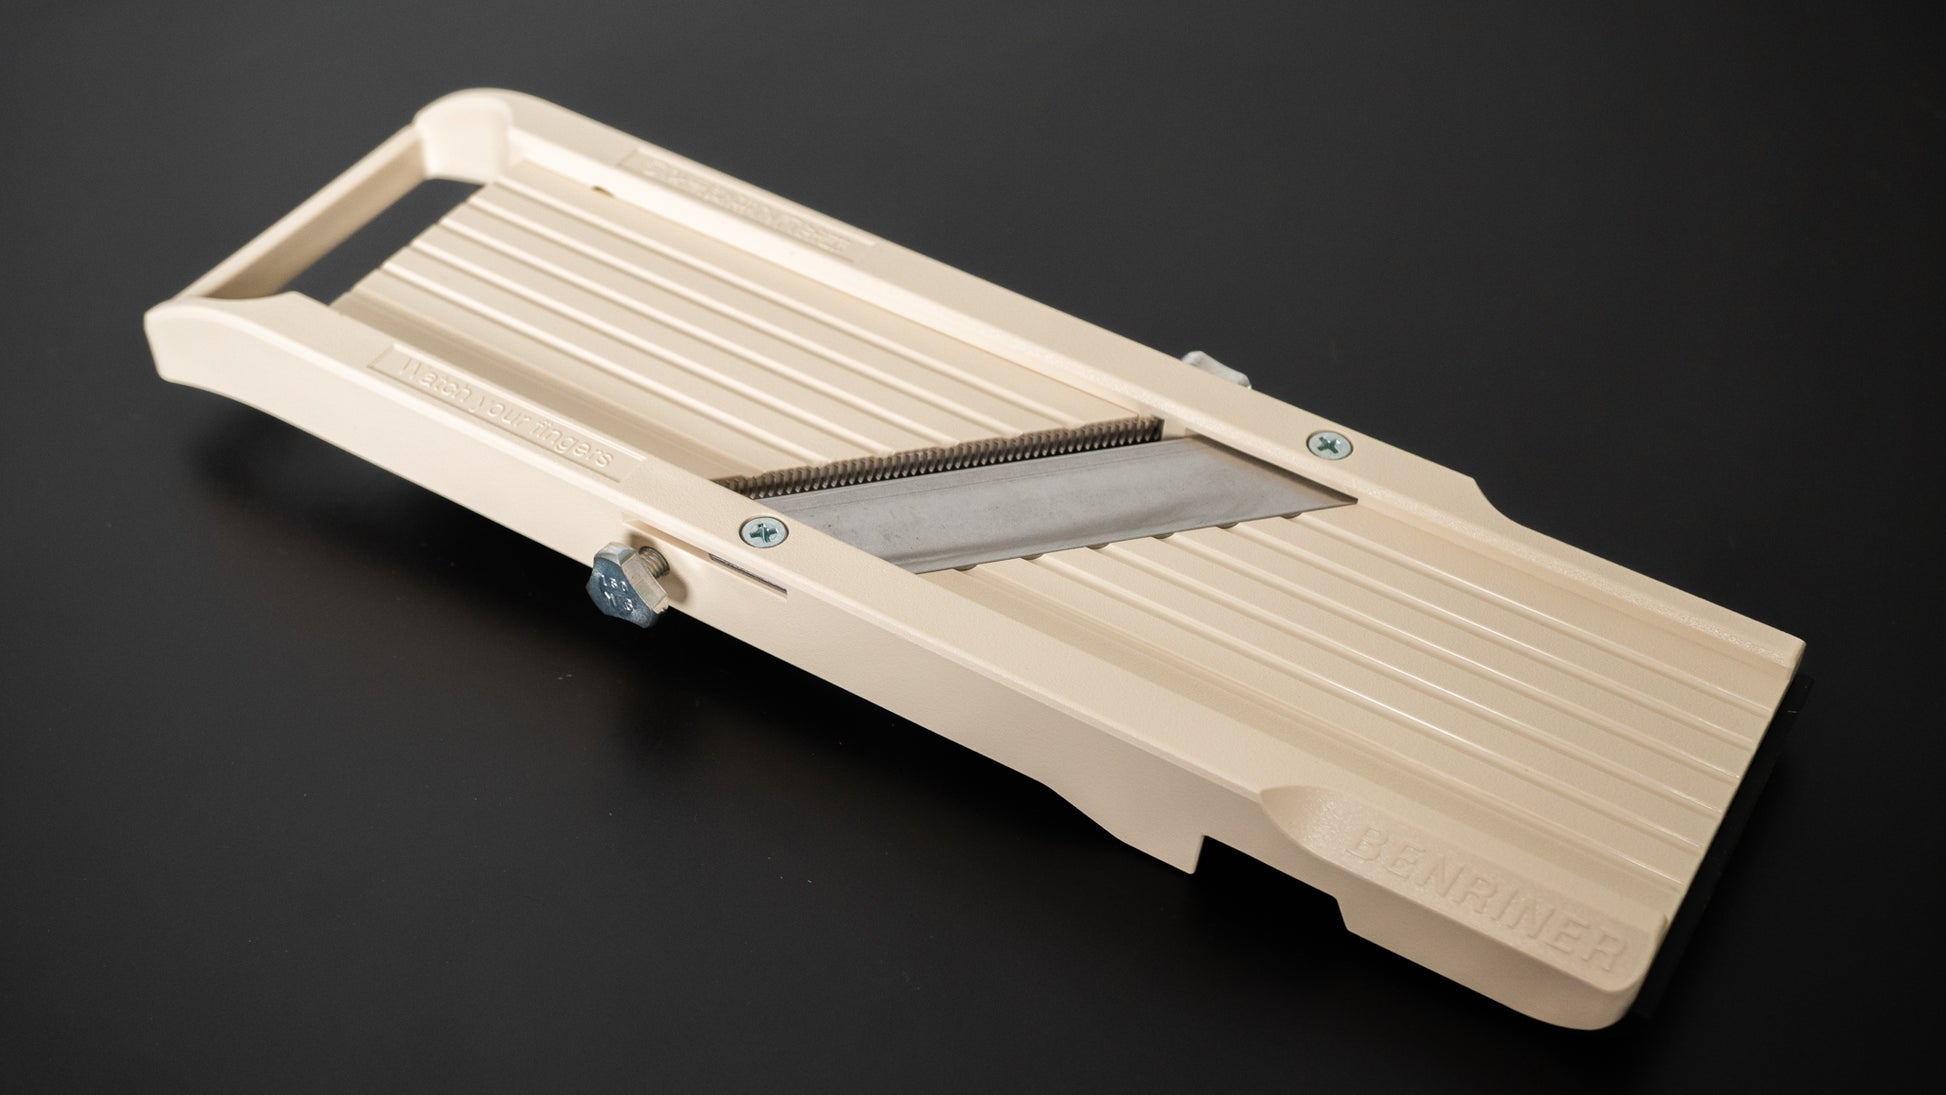 Benriner Japanese Mandoline Super Slicer with 4 Blades